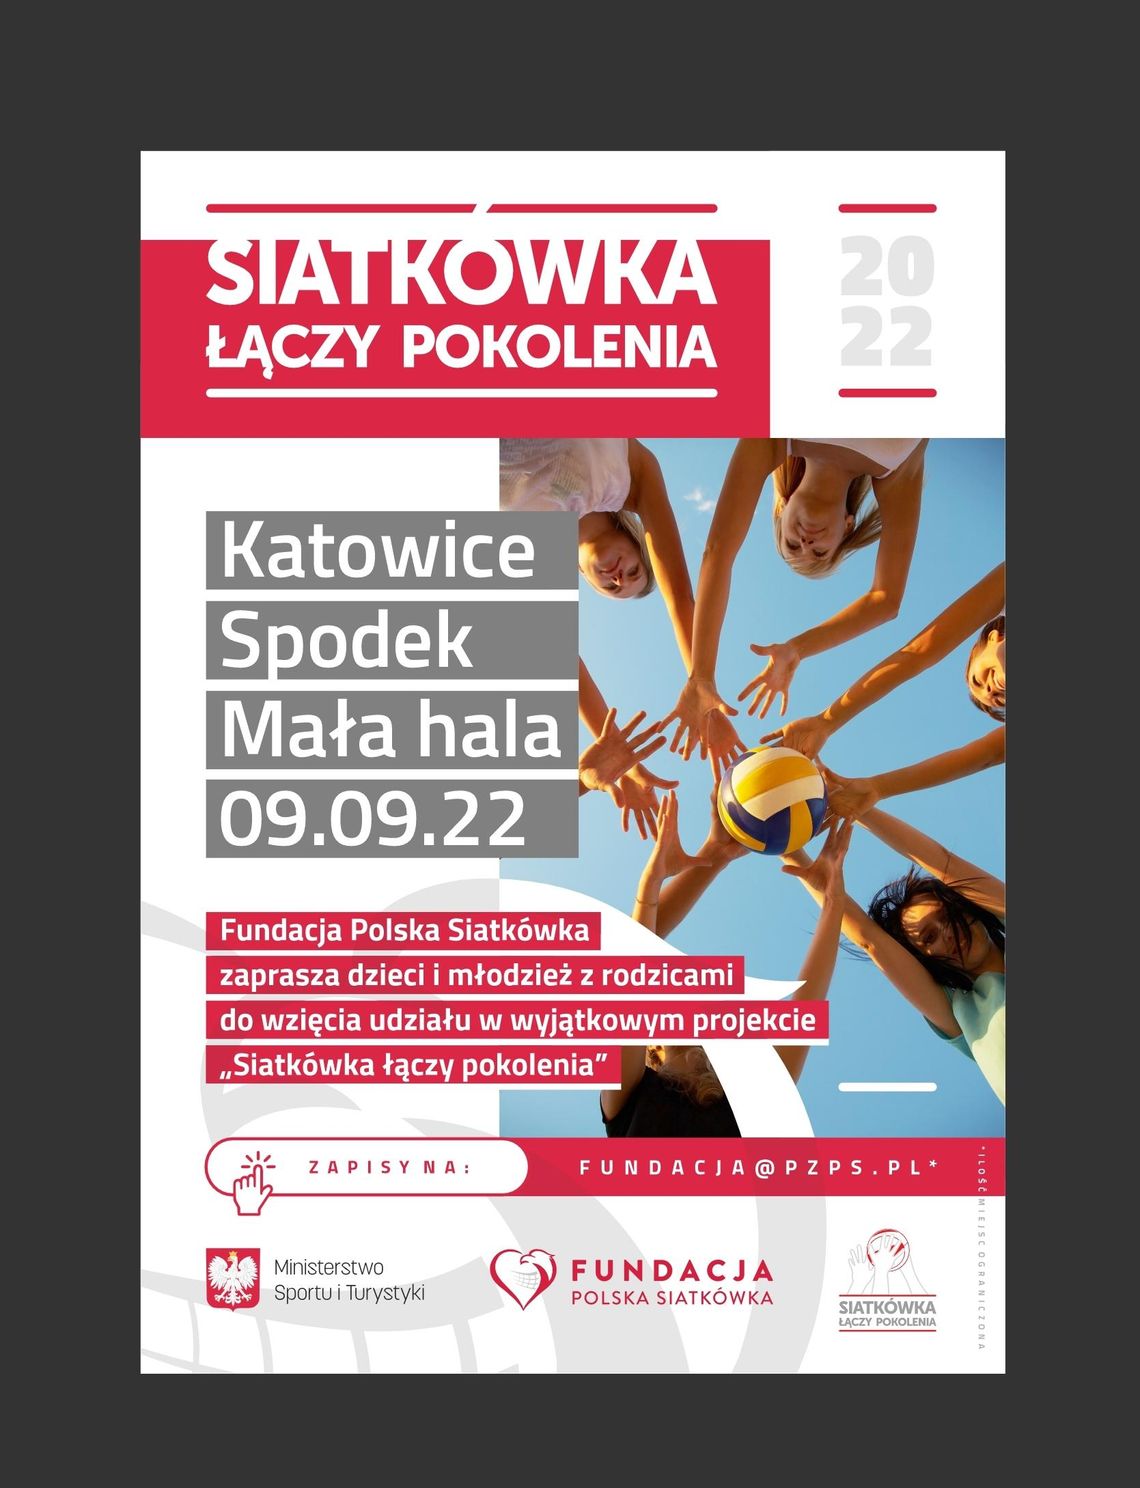 Siatkówka łączy pokolenia w Katowicach